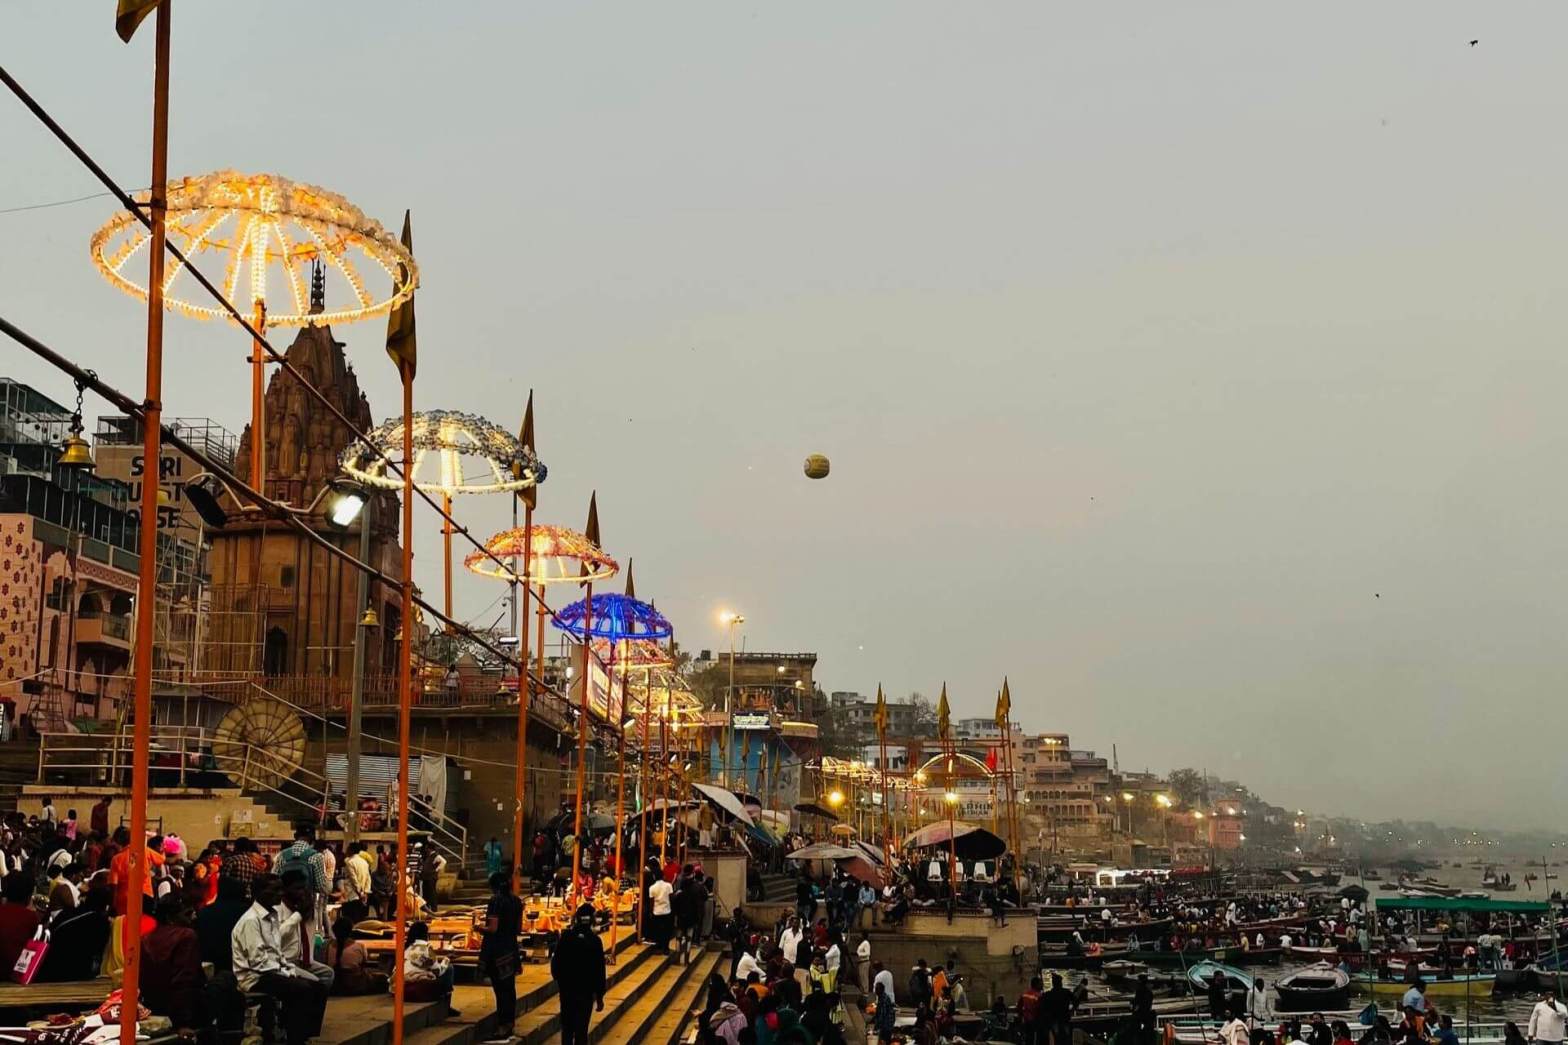 1 Day Varanasi / Kasi Local Sightseeing Trip by Car